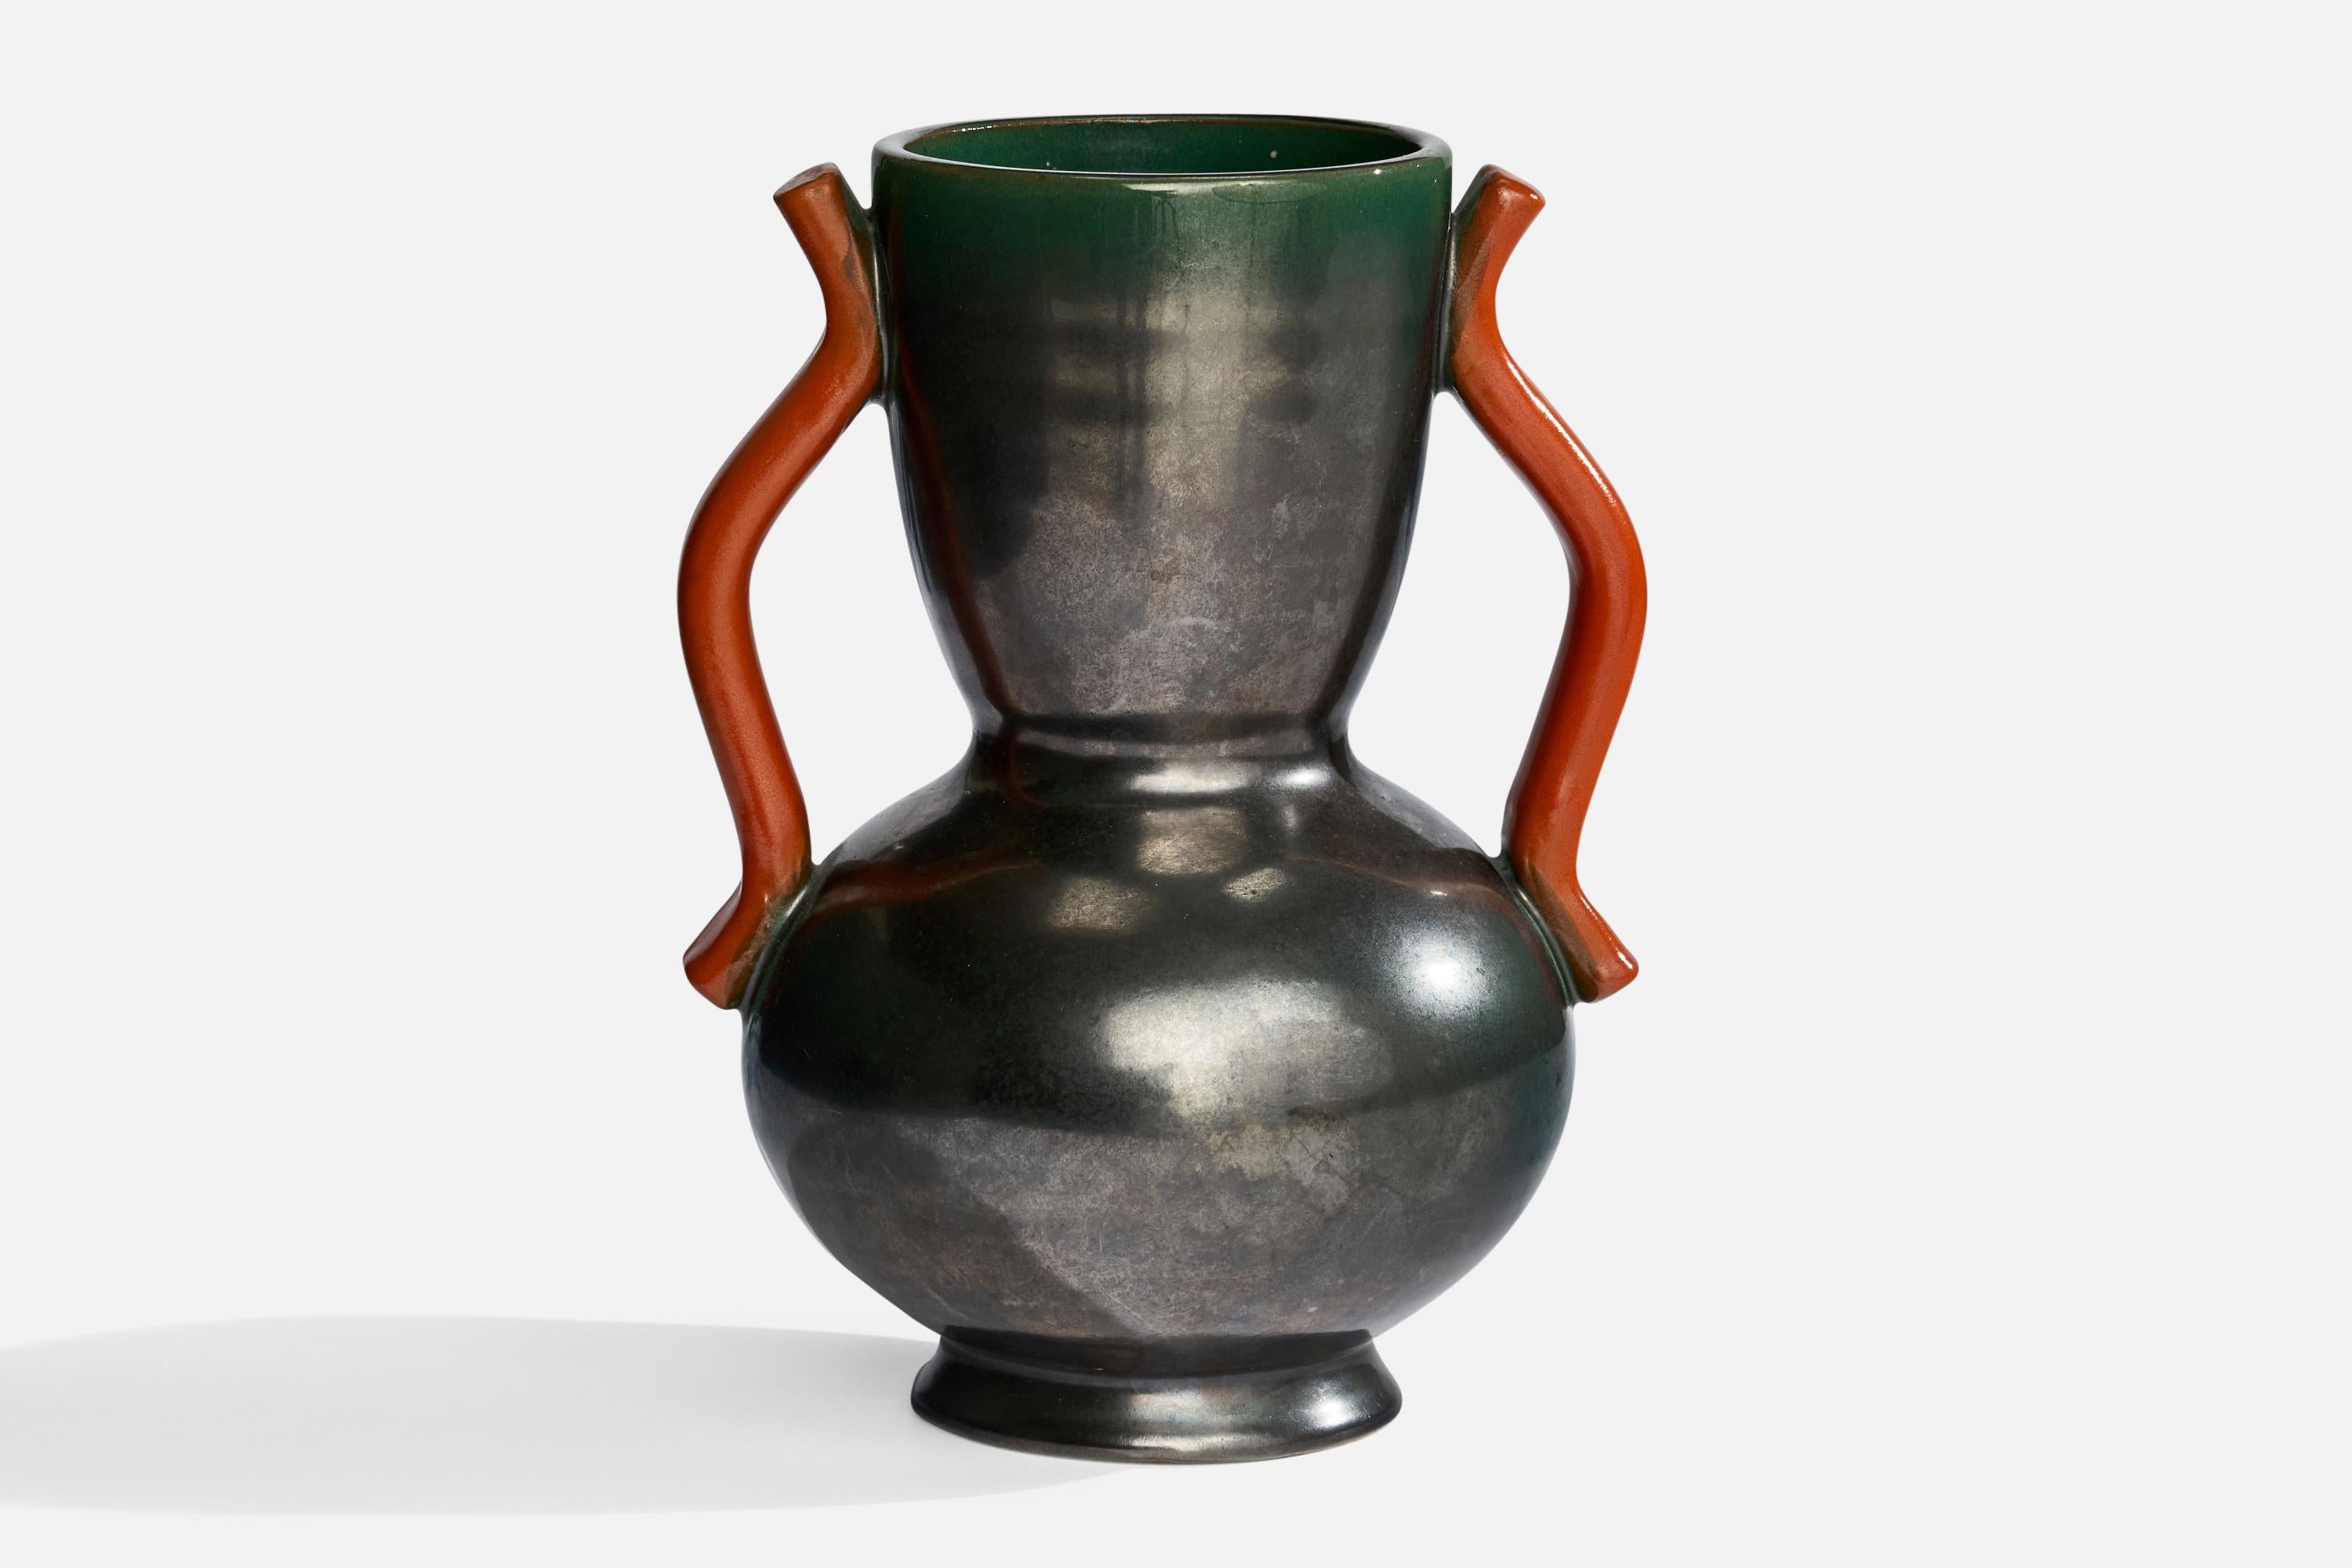 Vase en faïence à glaçure orange et verte conçu par Anna-Lisa Thomson et produit par Upsala Ekeby, Suède, années 1930.